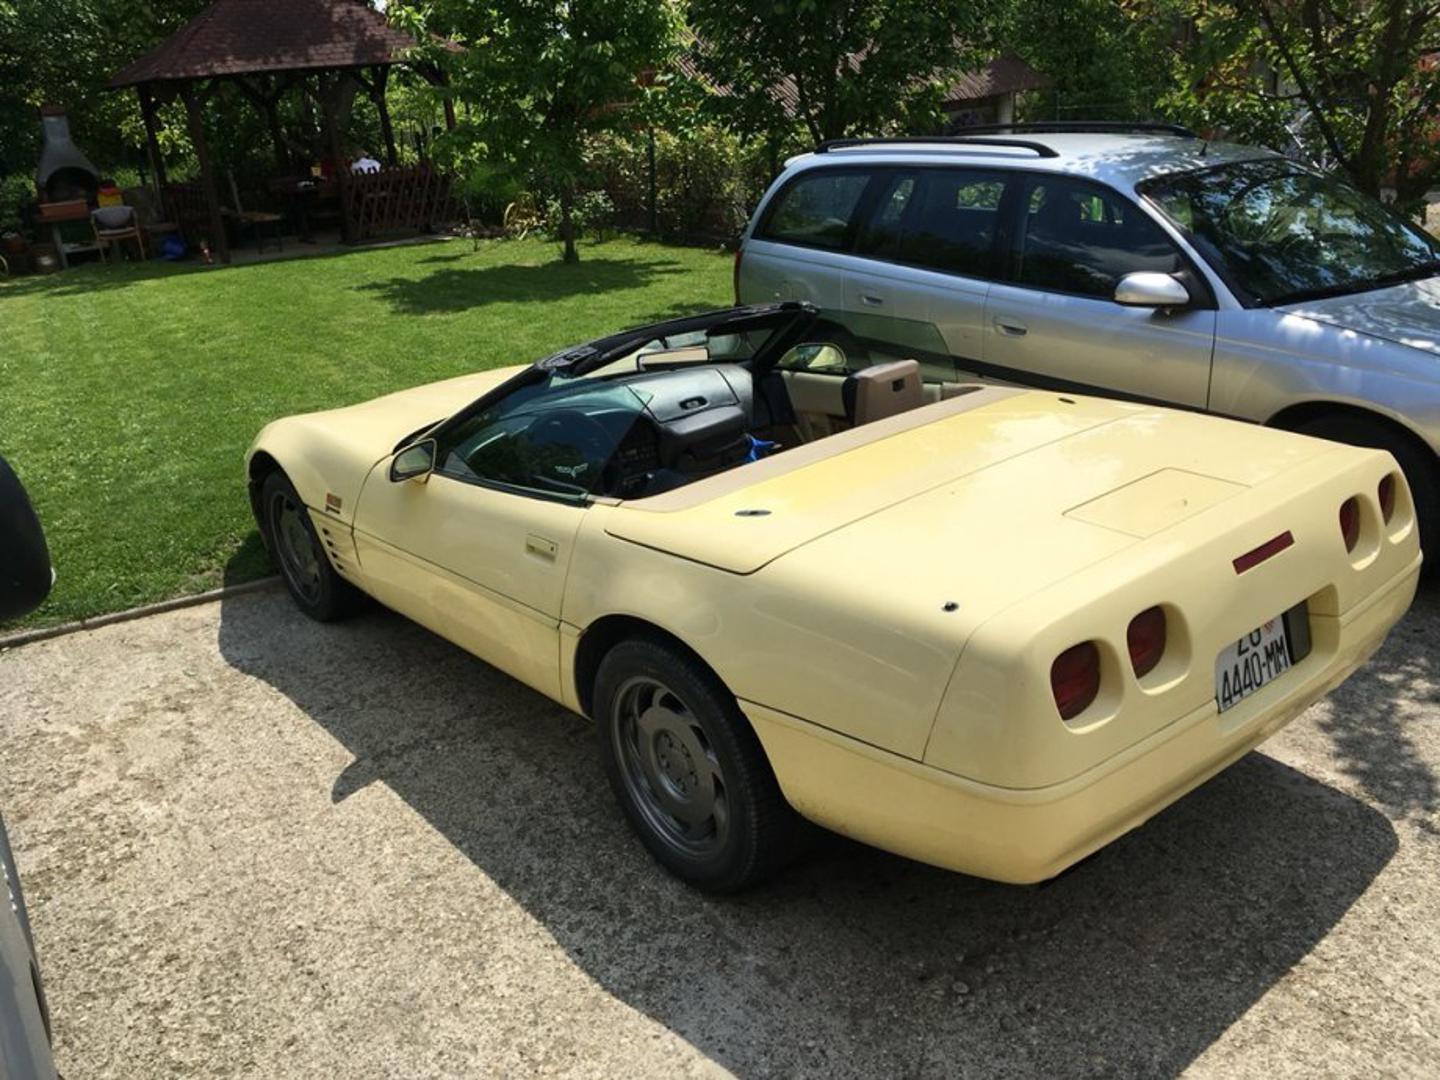 Corvette C4 - Zvijer od 300 konjskih snaga prava je poslastica. Automobil je proizveden prije 25 godina i prodaje se za 8500 eura. Prešao je tek 95 tisuća kilometara. Šifra oglasa: 23716101